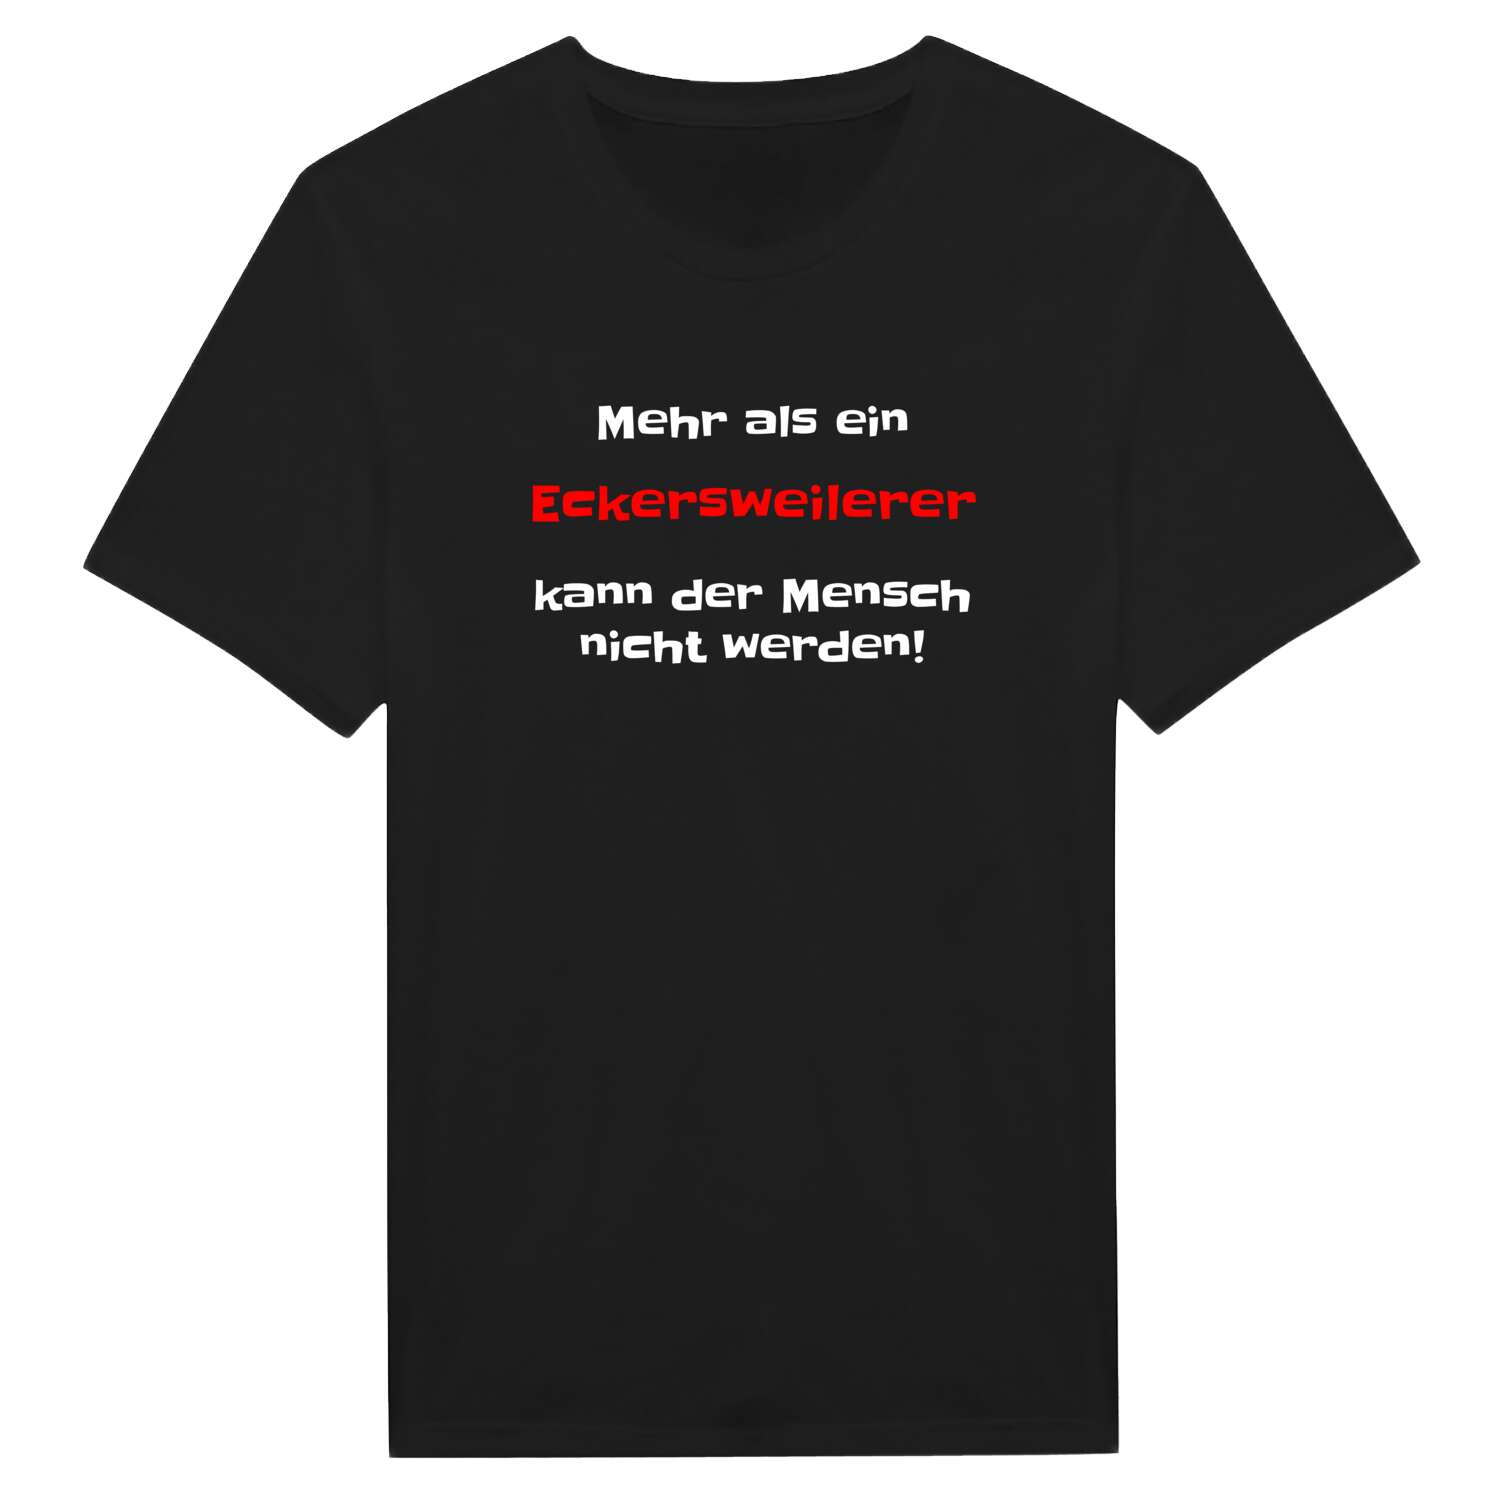 Eckersweiler T-Shirt »Mehr als ein«